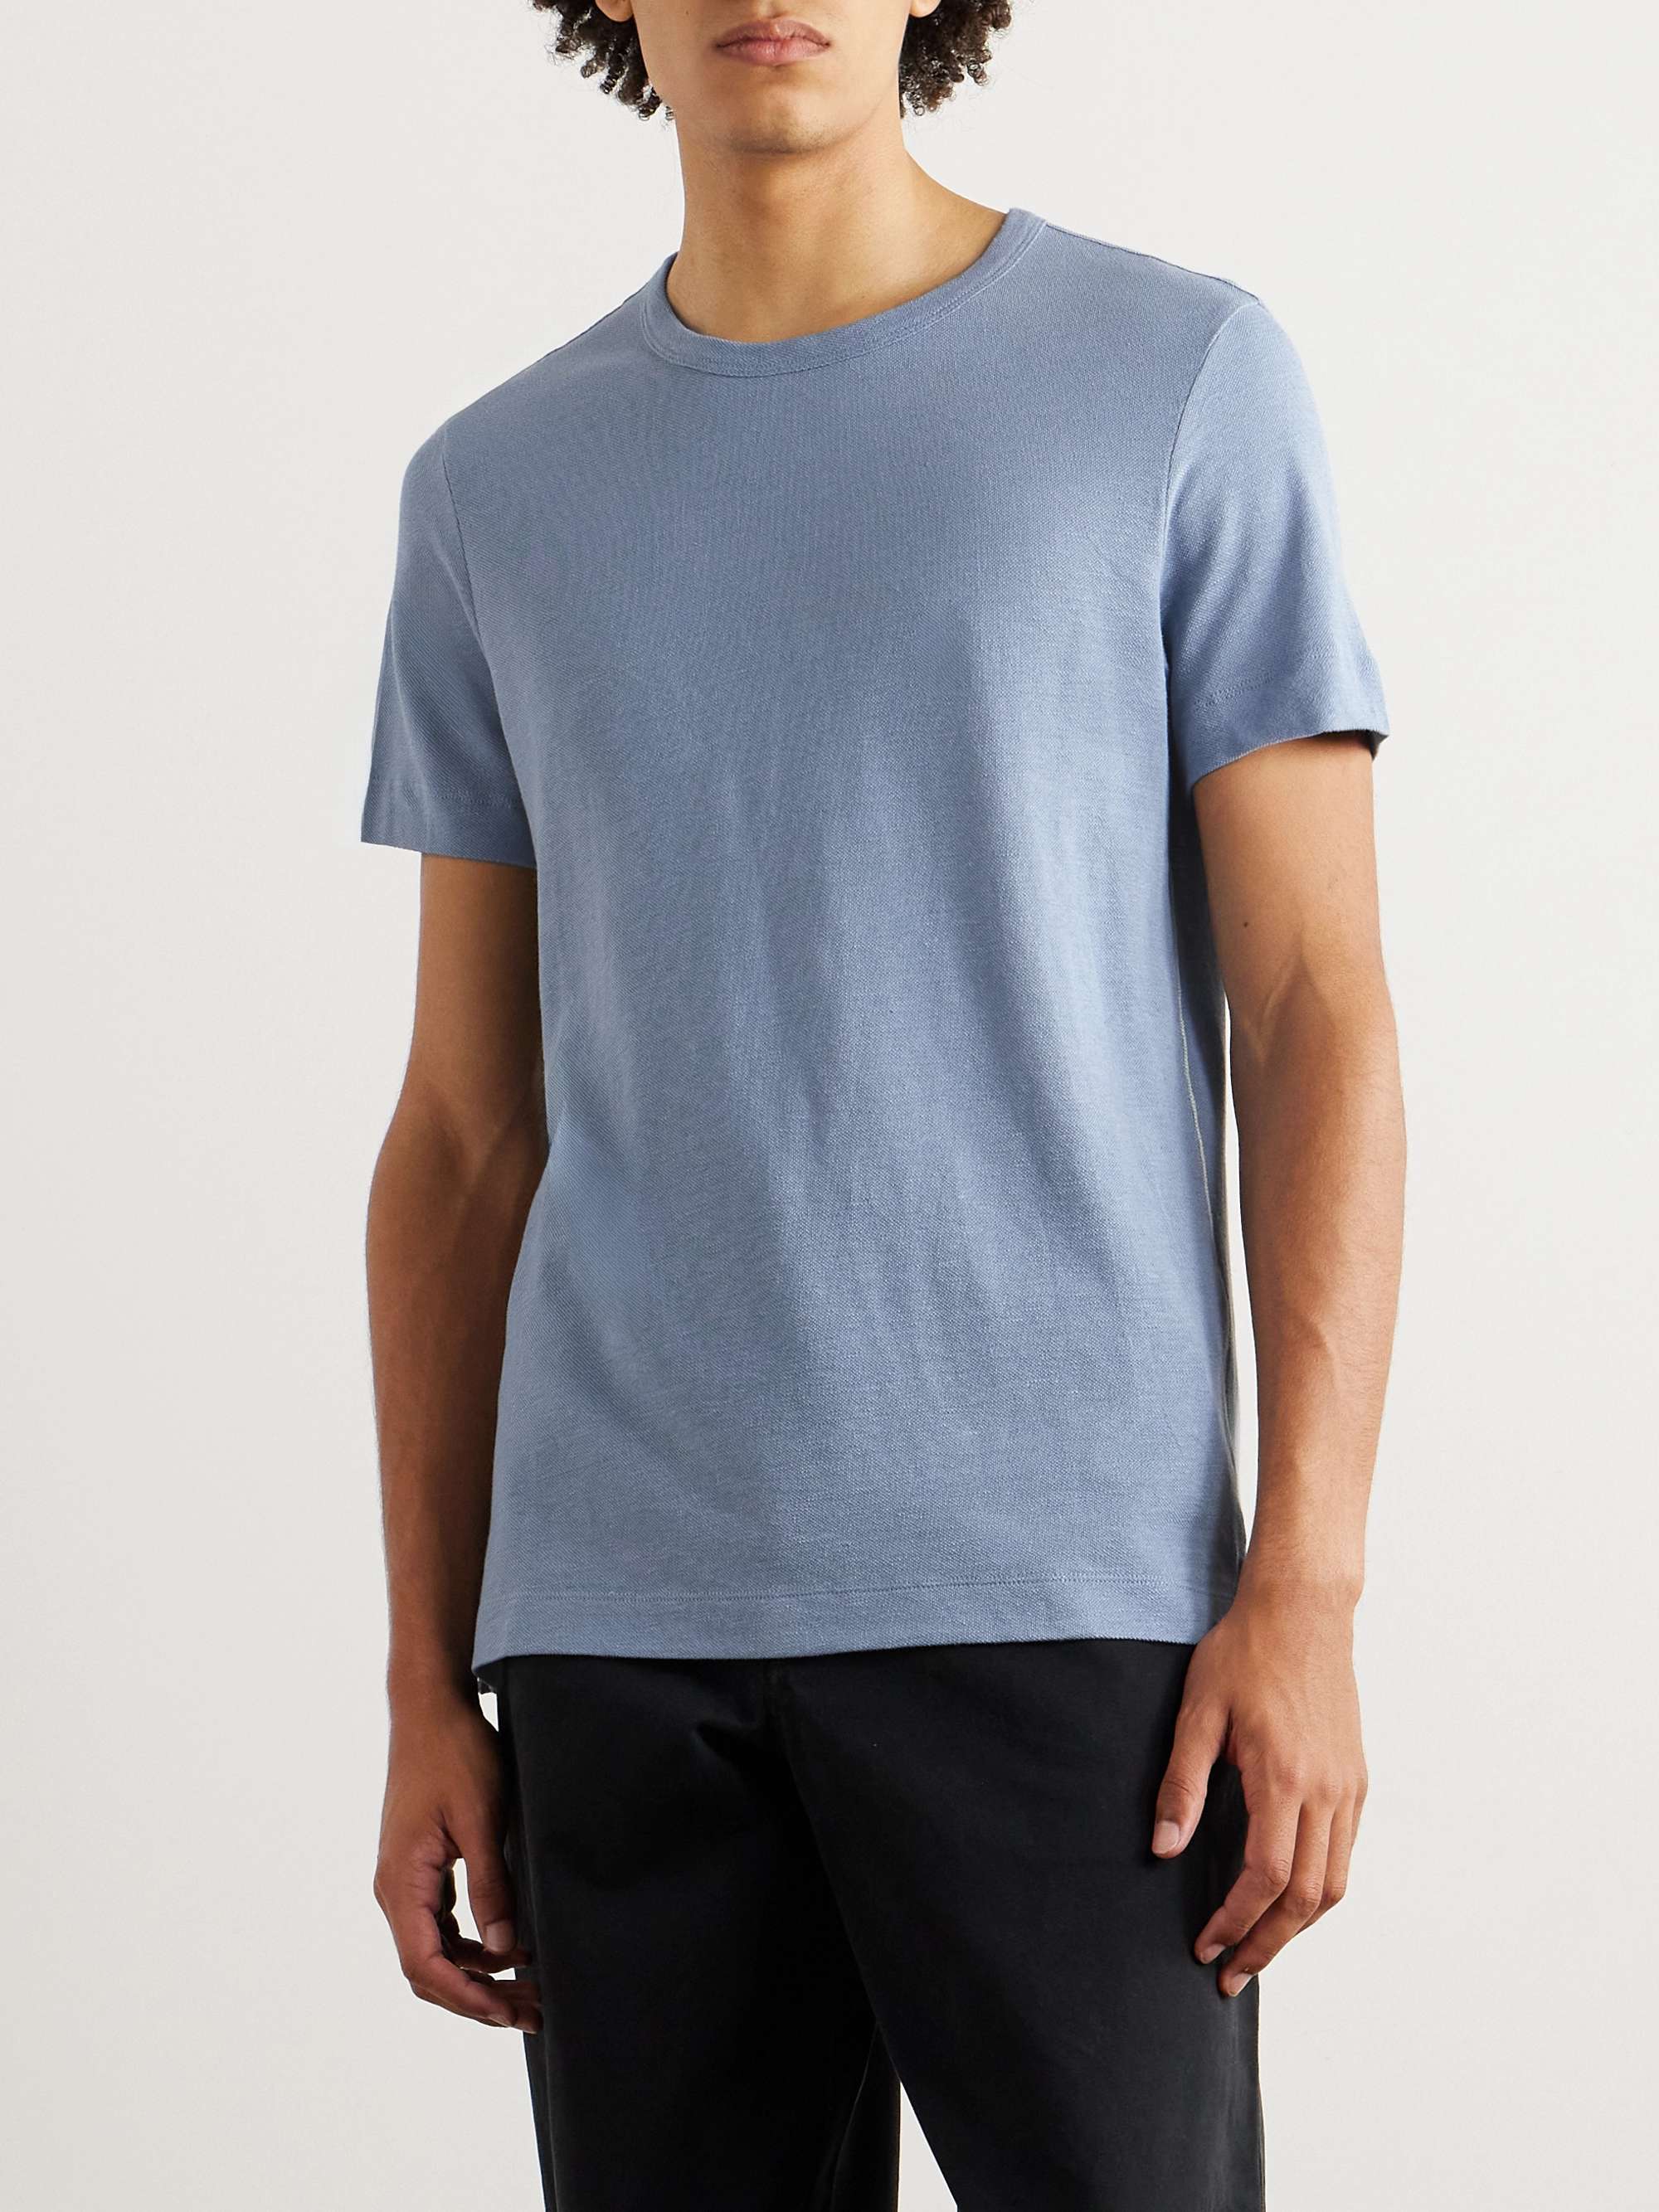 CLUB MONACO Slub Linen and Cotton-Blend Piqué T-Shirt for Men | MR PORTER